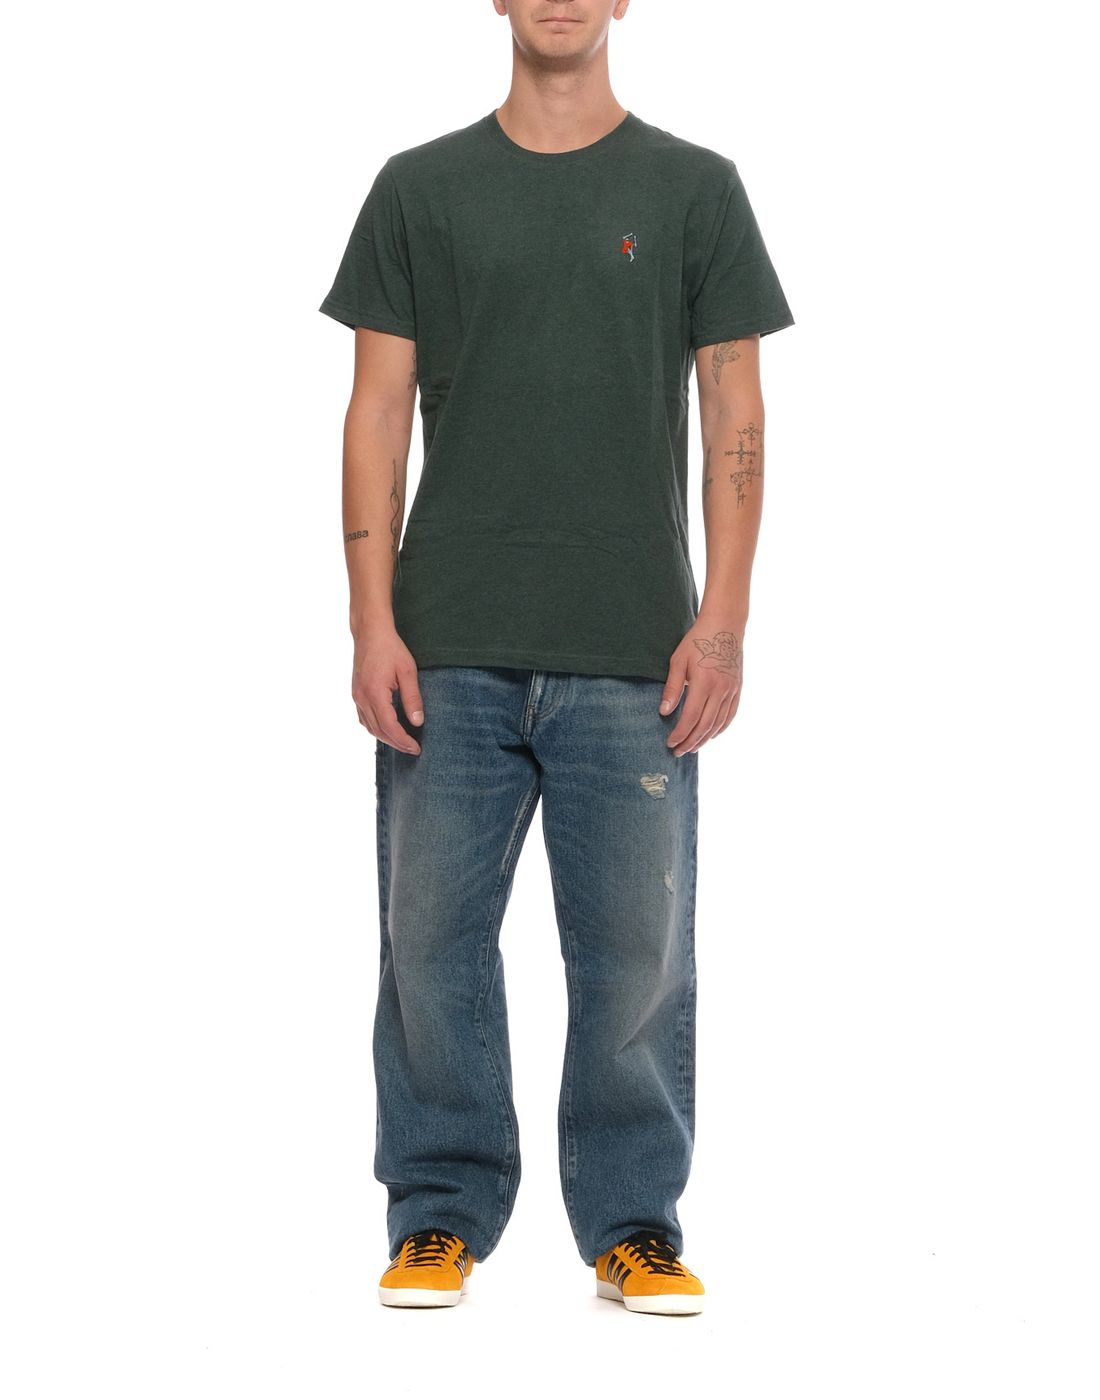 T-shirt pour l'homme 1294 vert foncé REVOLUTION